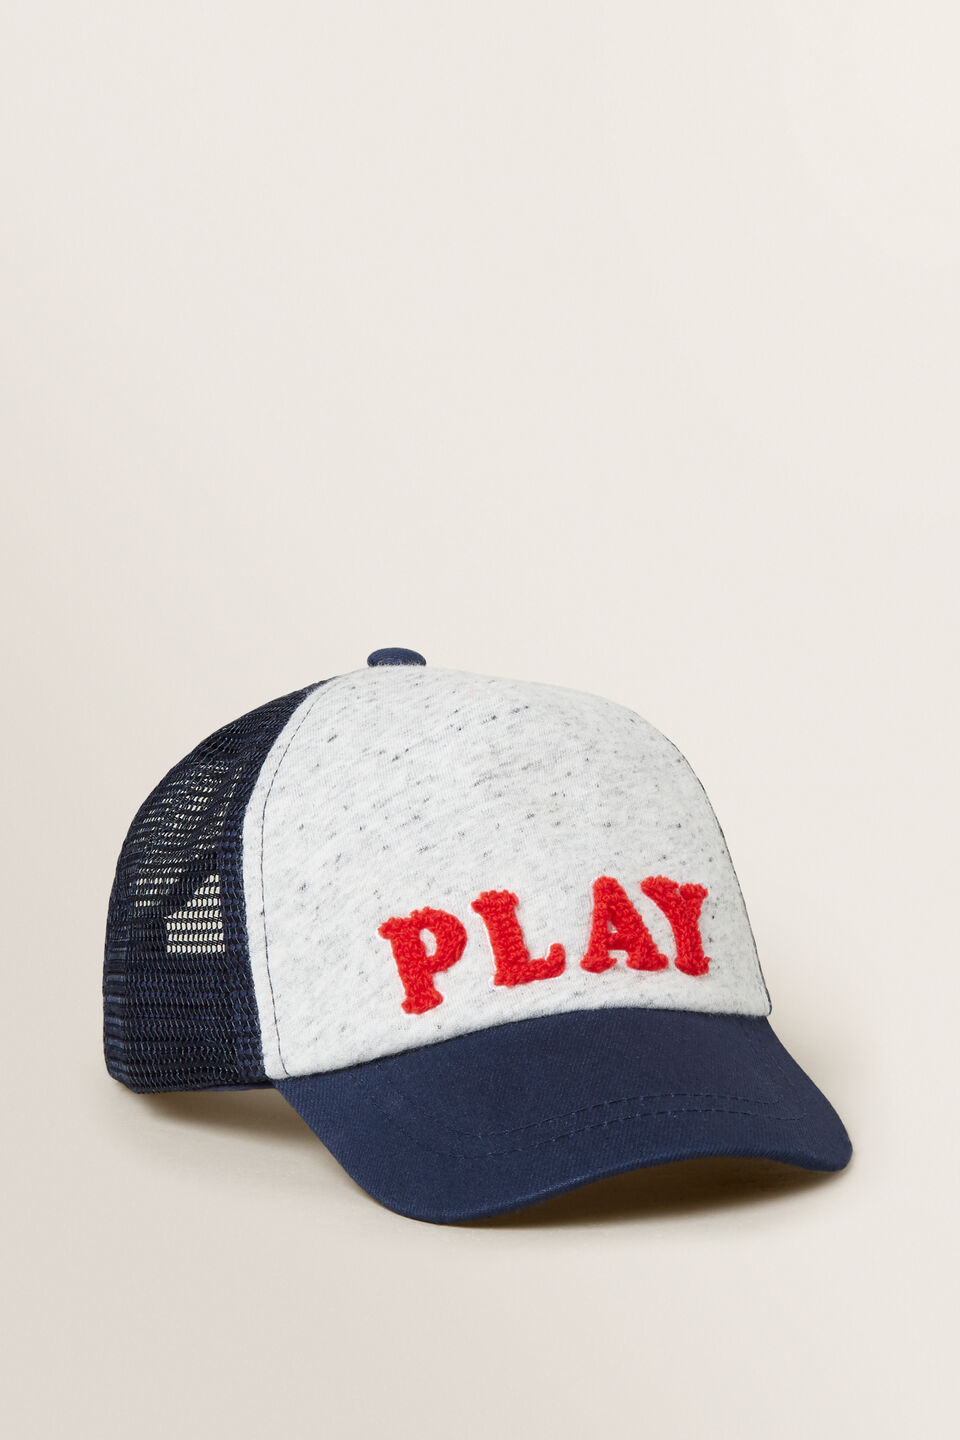 Play Cap  